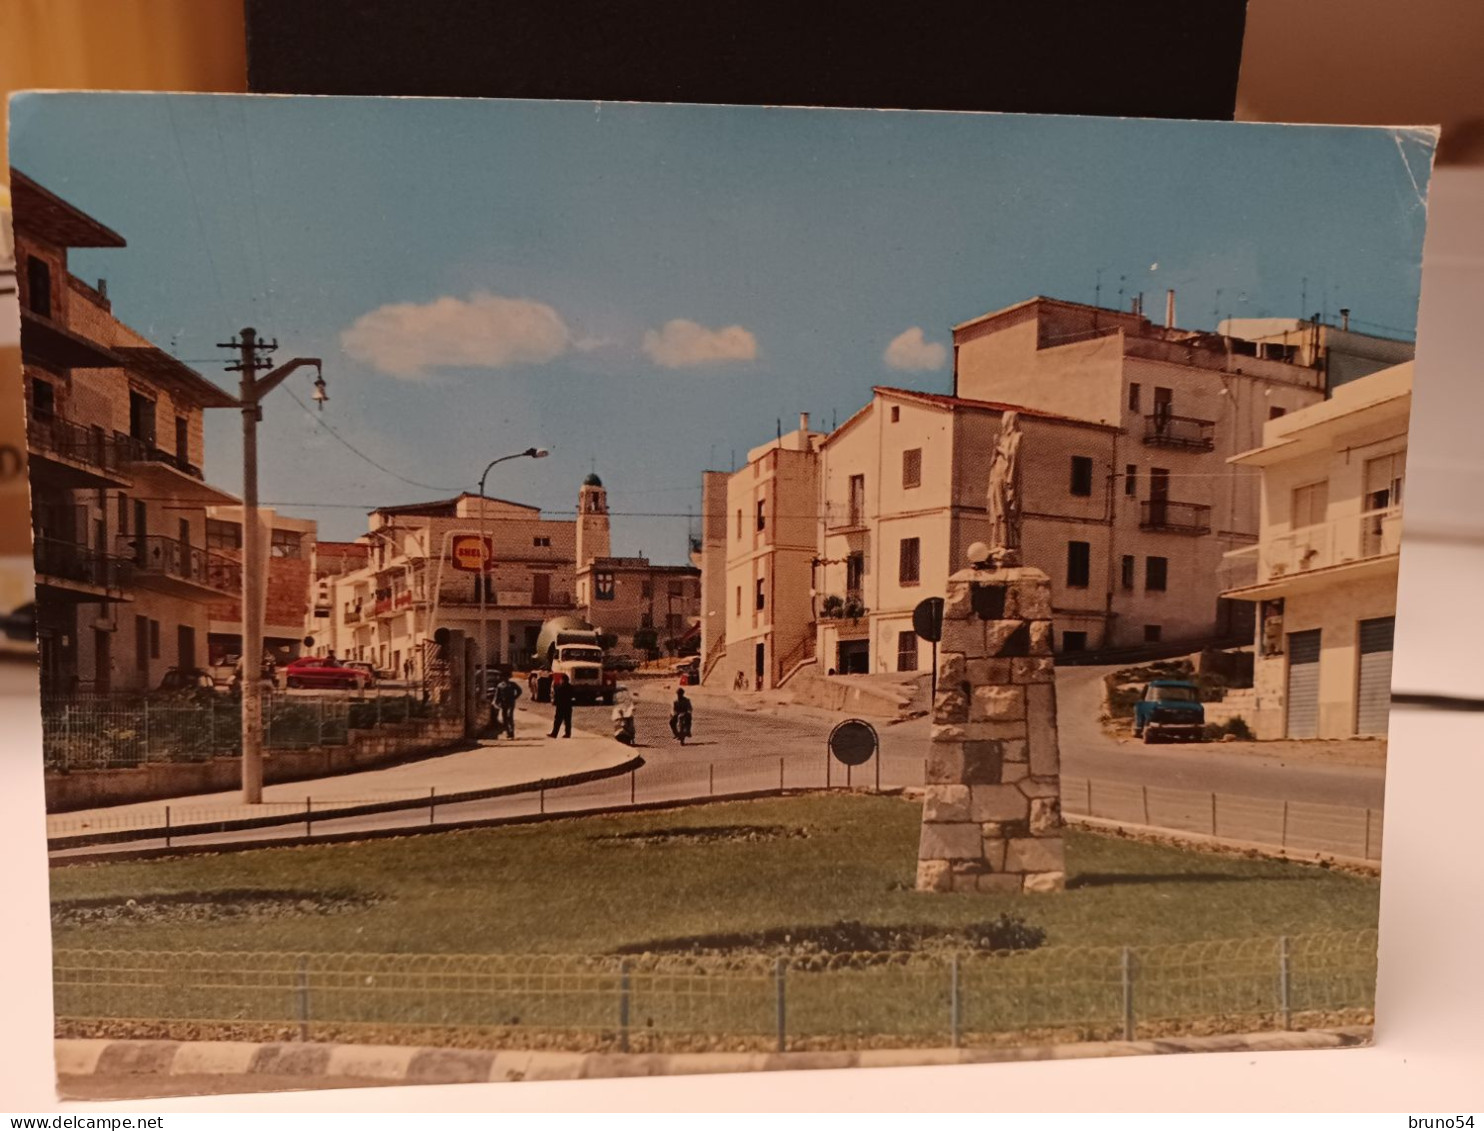 2 Cartoline Policoro Provincia Matera ,piazza Eraclea E Veduta Parziale,benzinaio Shell,anni 70 - Matera